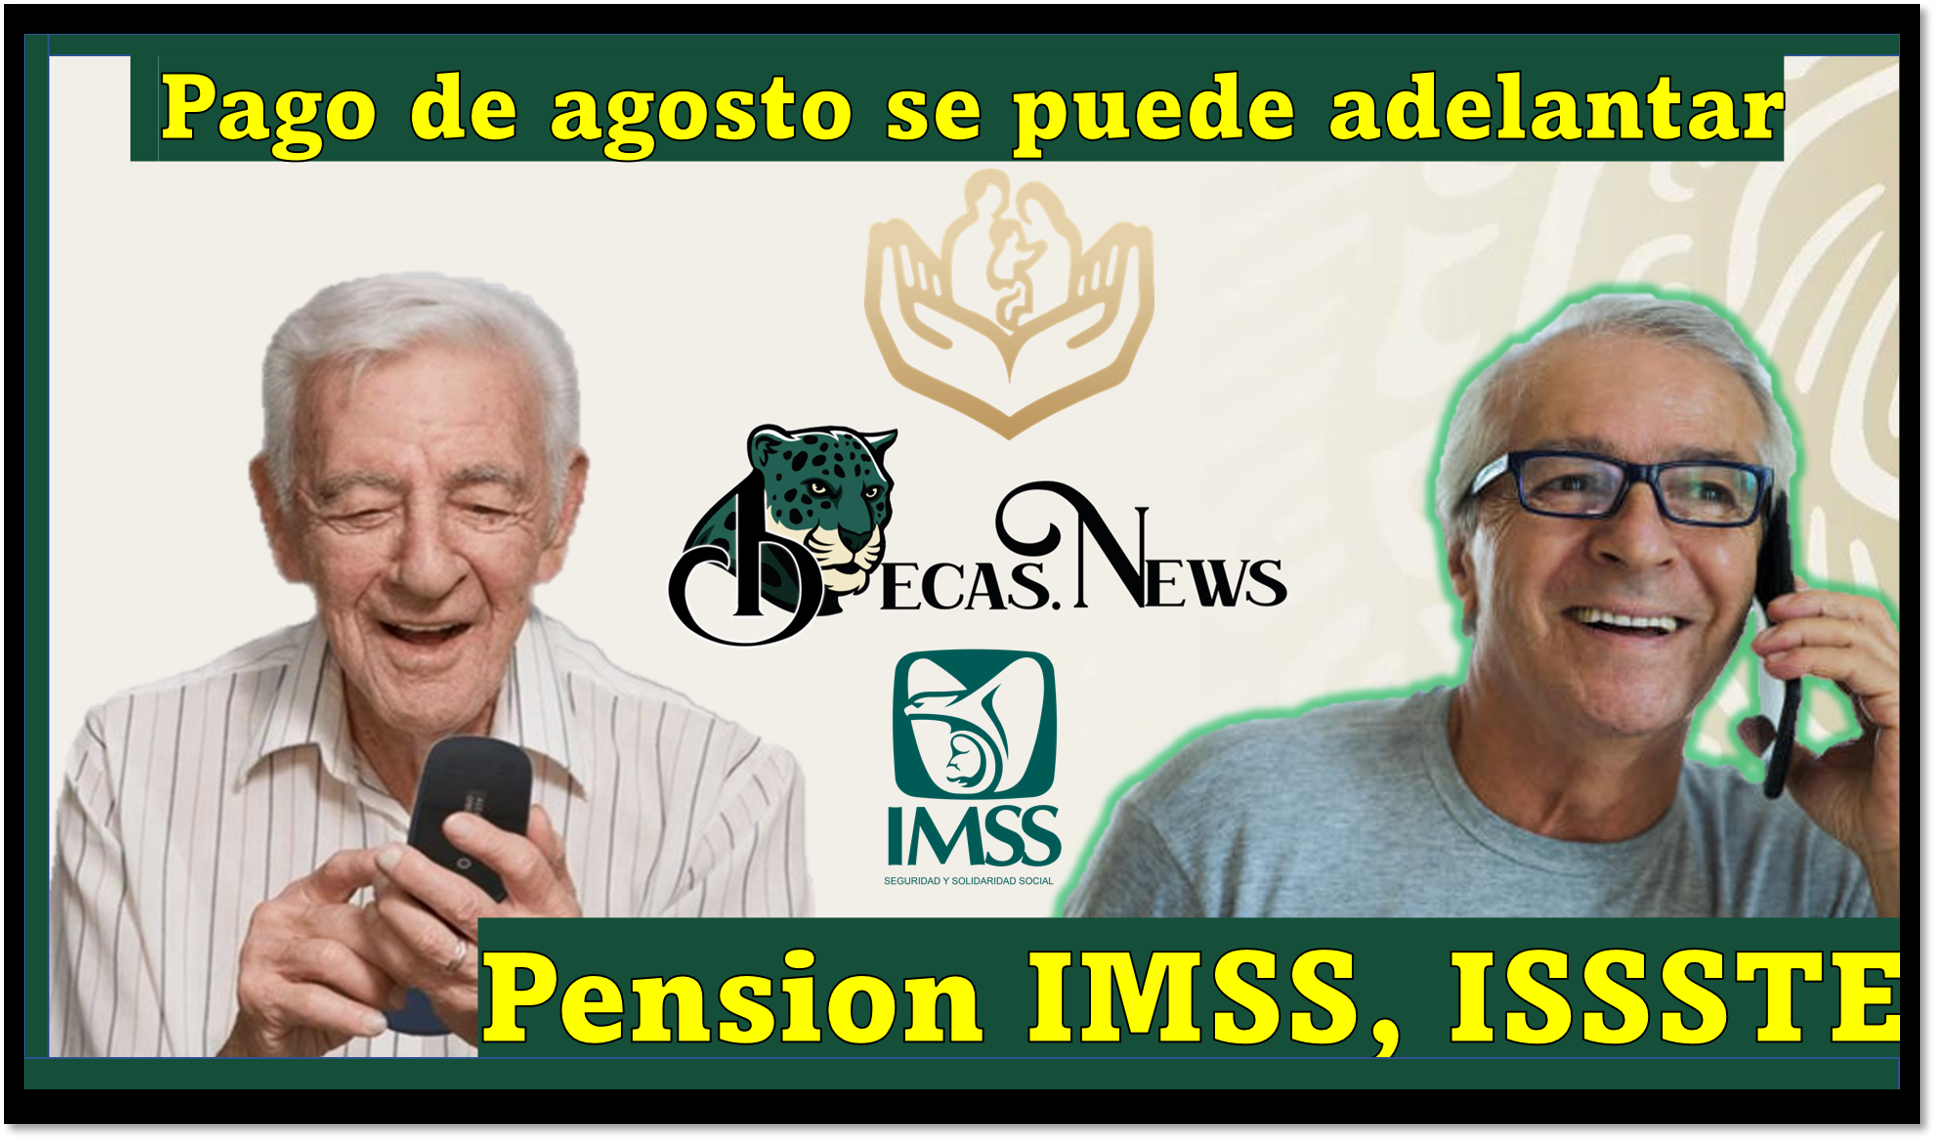 Pensión ISSSTE e IMSS: Pago de agosto se puede adelantar